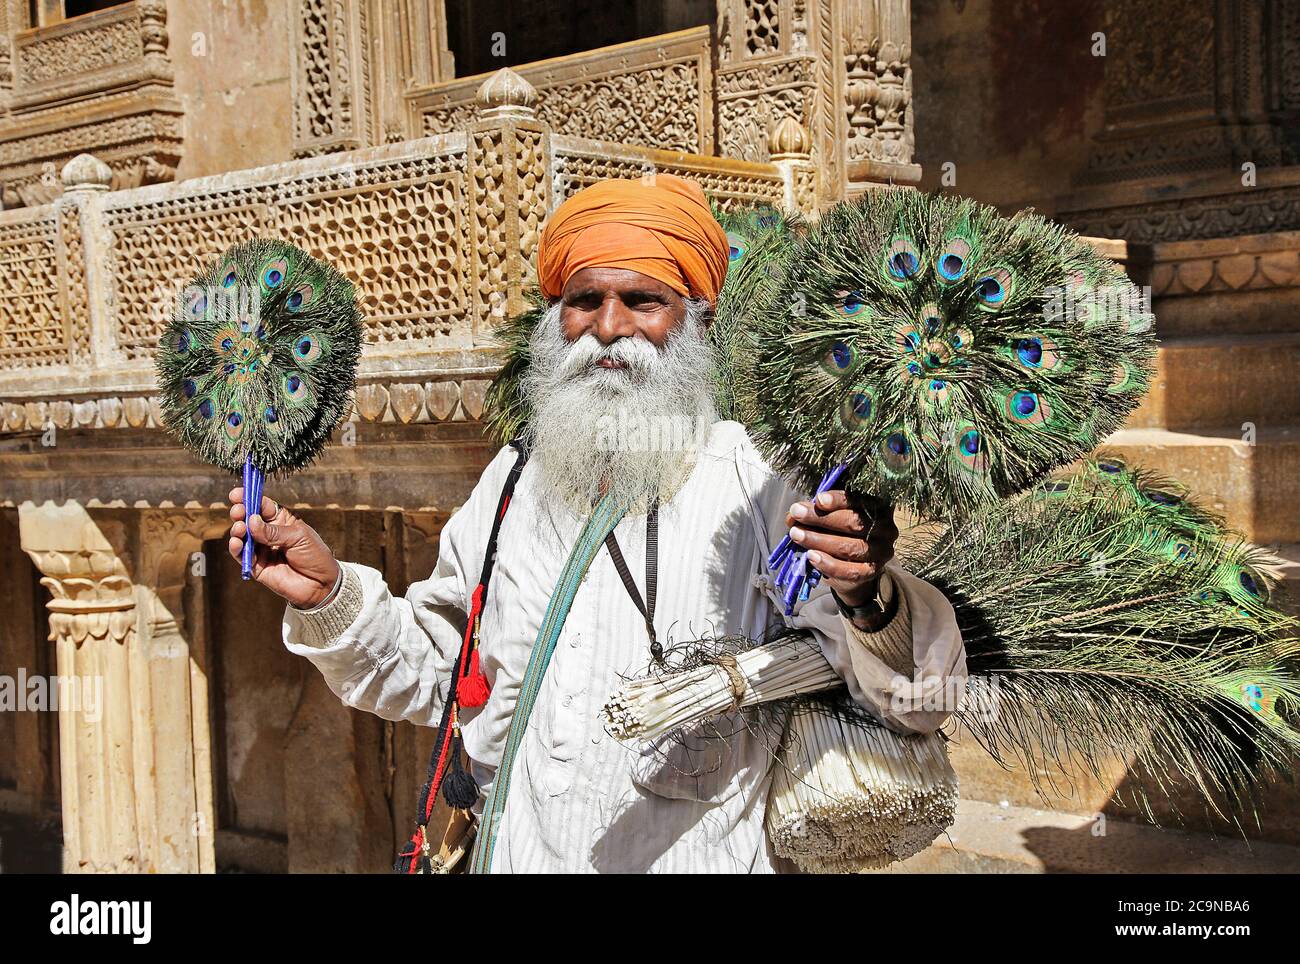 Città vecchia di Jaisalmer, vita quotidiana del popolo indiano. Vecchio uomo che vende piume di pavone. Feb 2013 Rajasthan, India Foto Stock